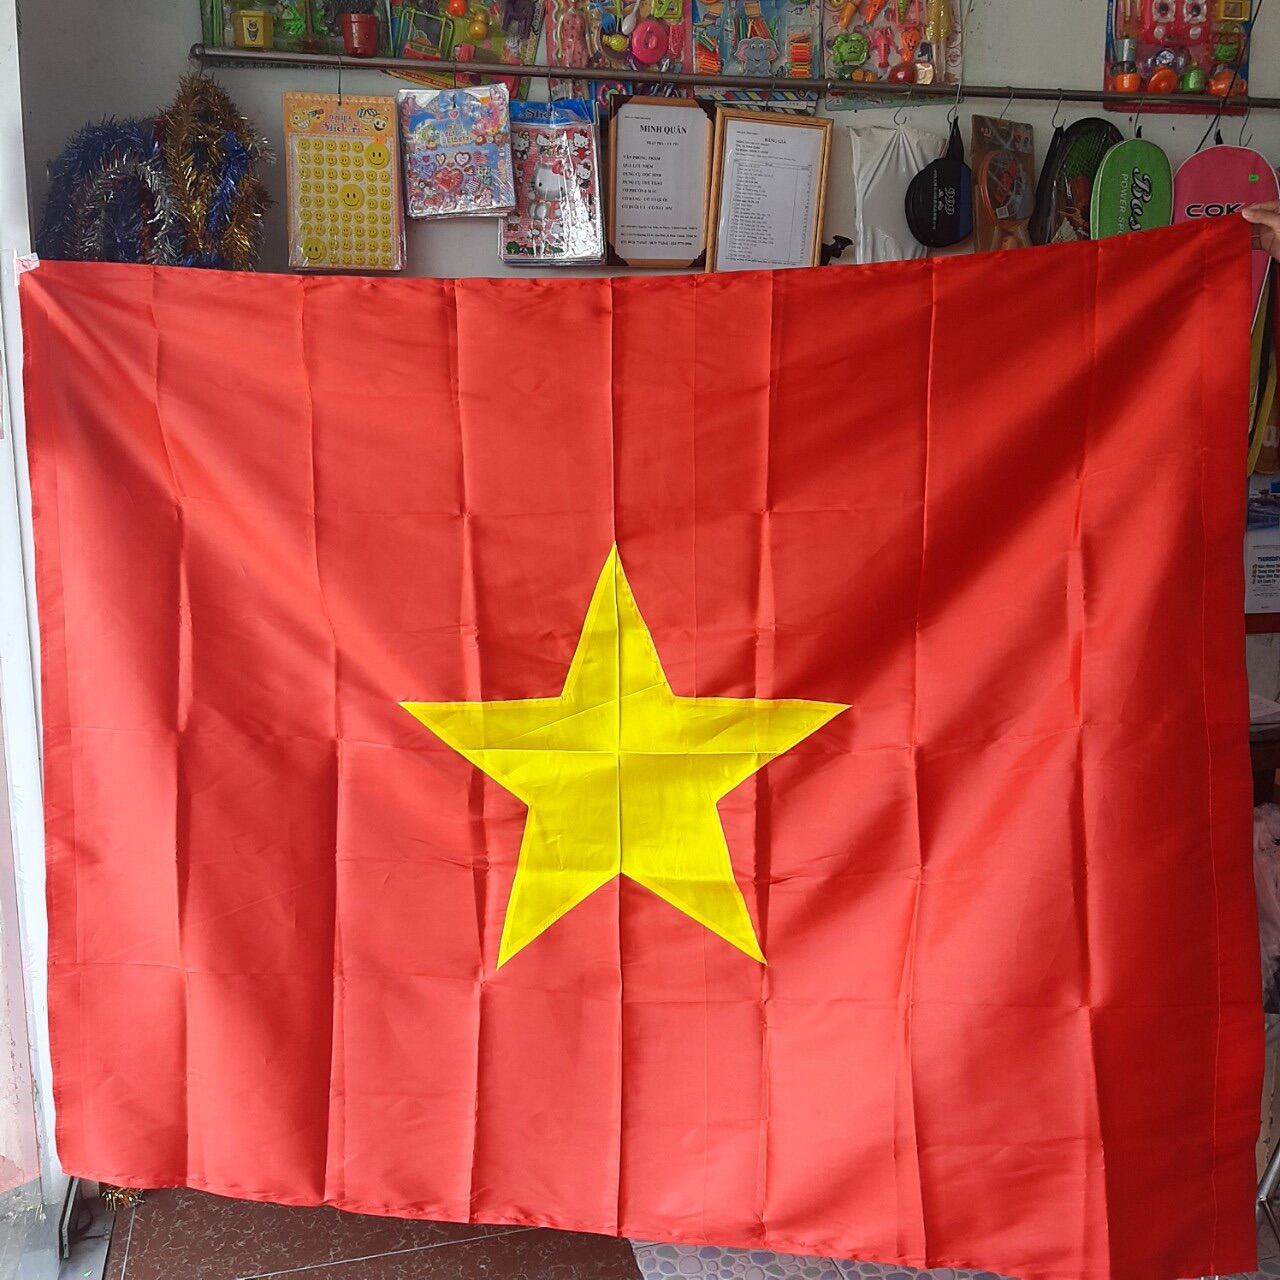 Cờ đỏ sao vàng búa liềm: Vào năm 2024, cờ đỏ sao vàng búa liềm vẫn là biểu tượng của sự đoàn kết và sức mạnh dân tộc. Những năm qua, Việt Nam đã phát triển vượt bậc với nhiều thành tựu đáng tự hào. Hãy cùng ngắm nhìn hình ảnh này và cảm nhận sức mạnh của đất nước Việt Nam.